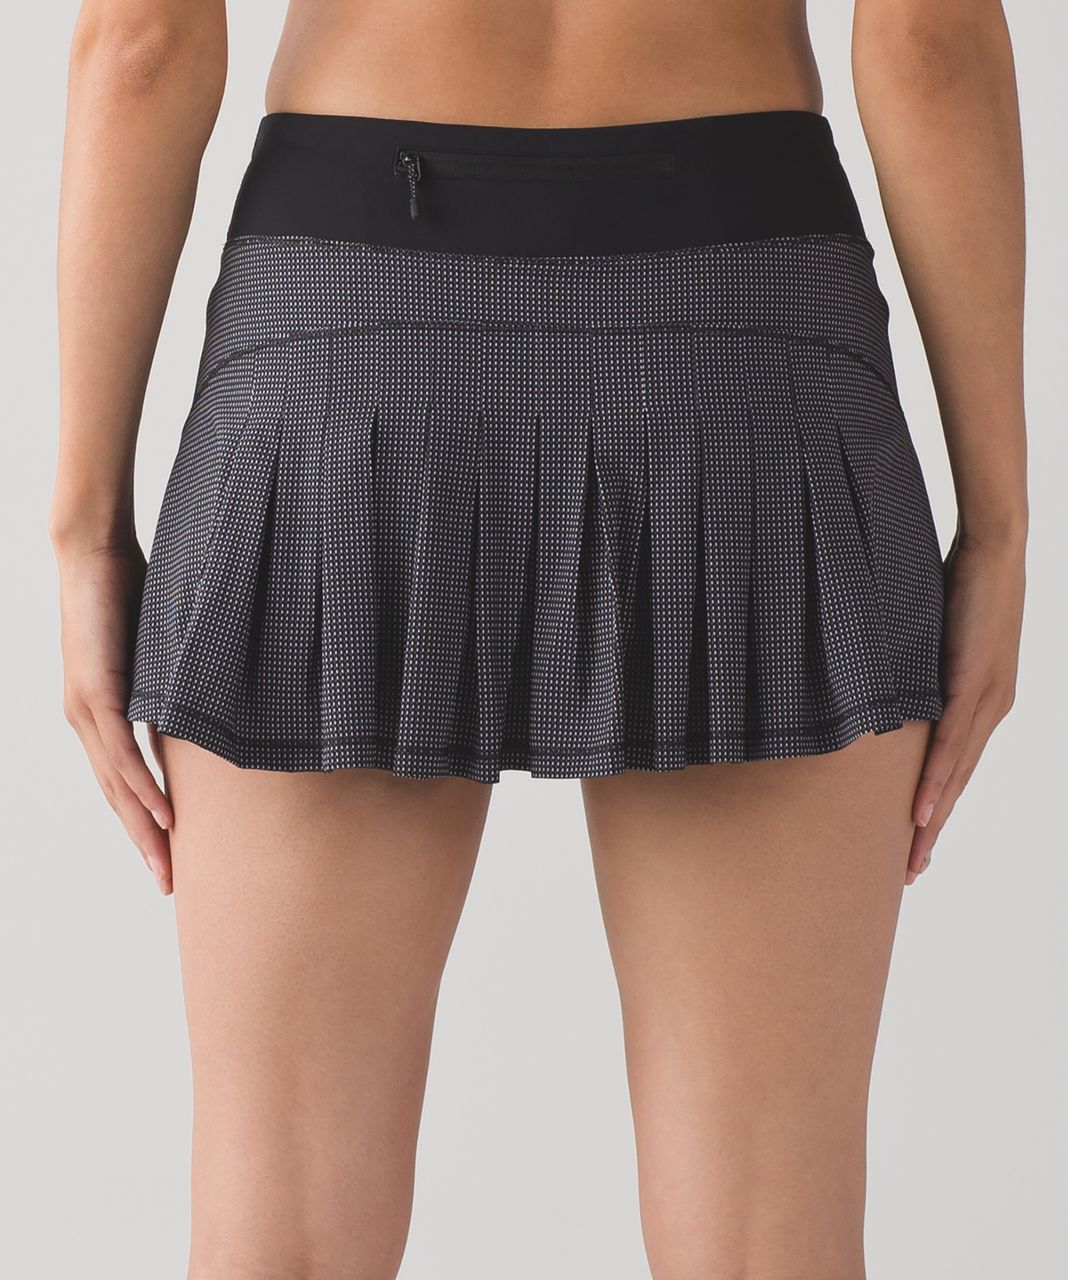 Lululemon Circuit Breaker Skirt (Regular) (13") - Teeny Check Print White Black / Black